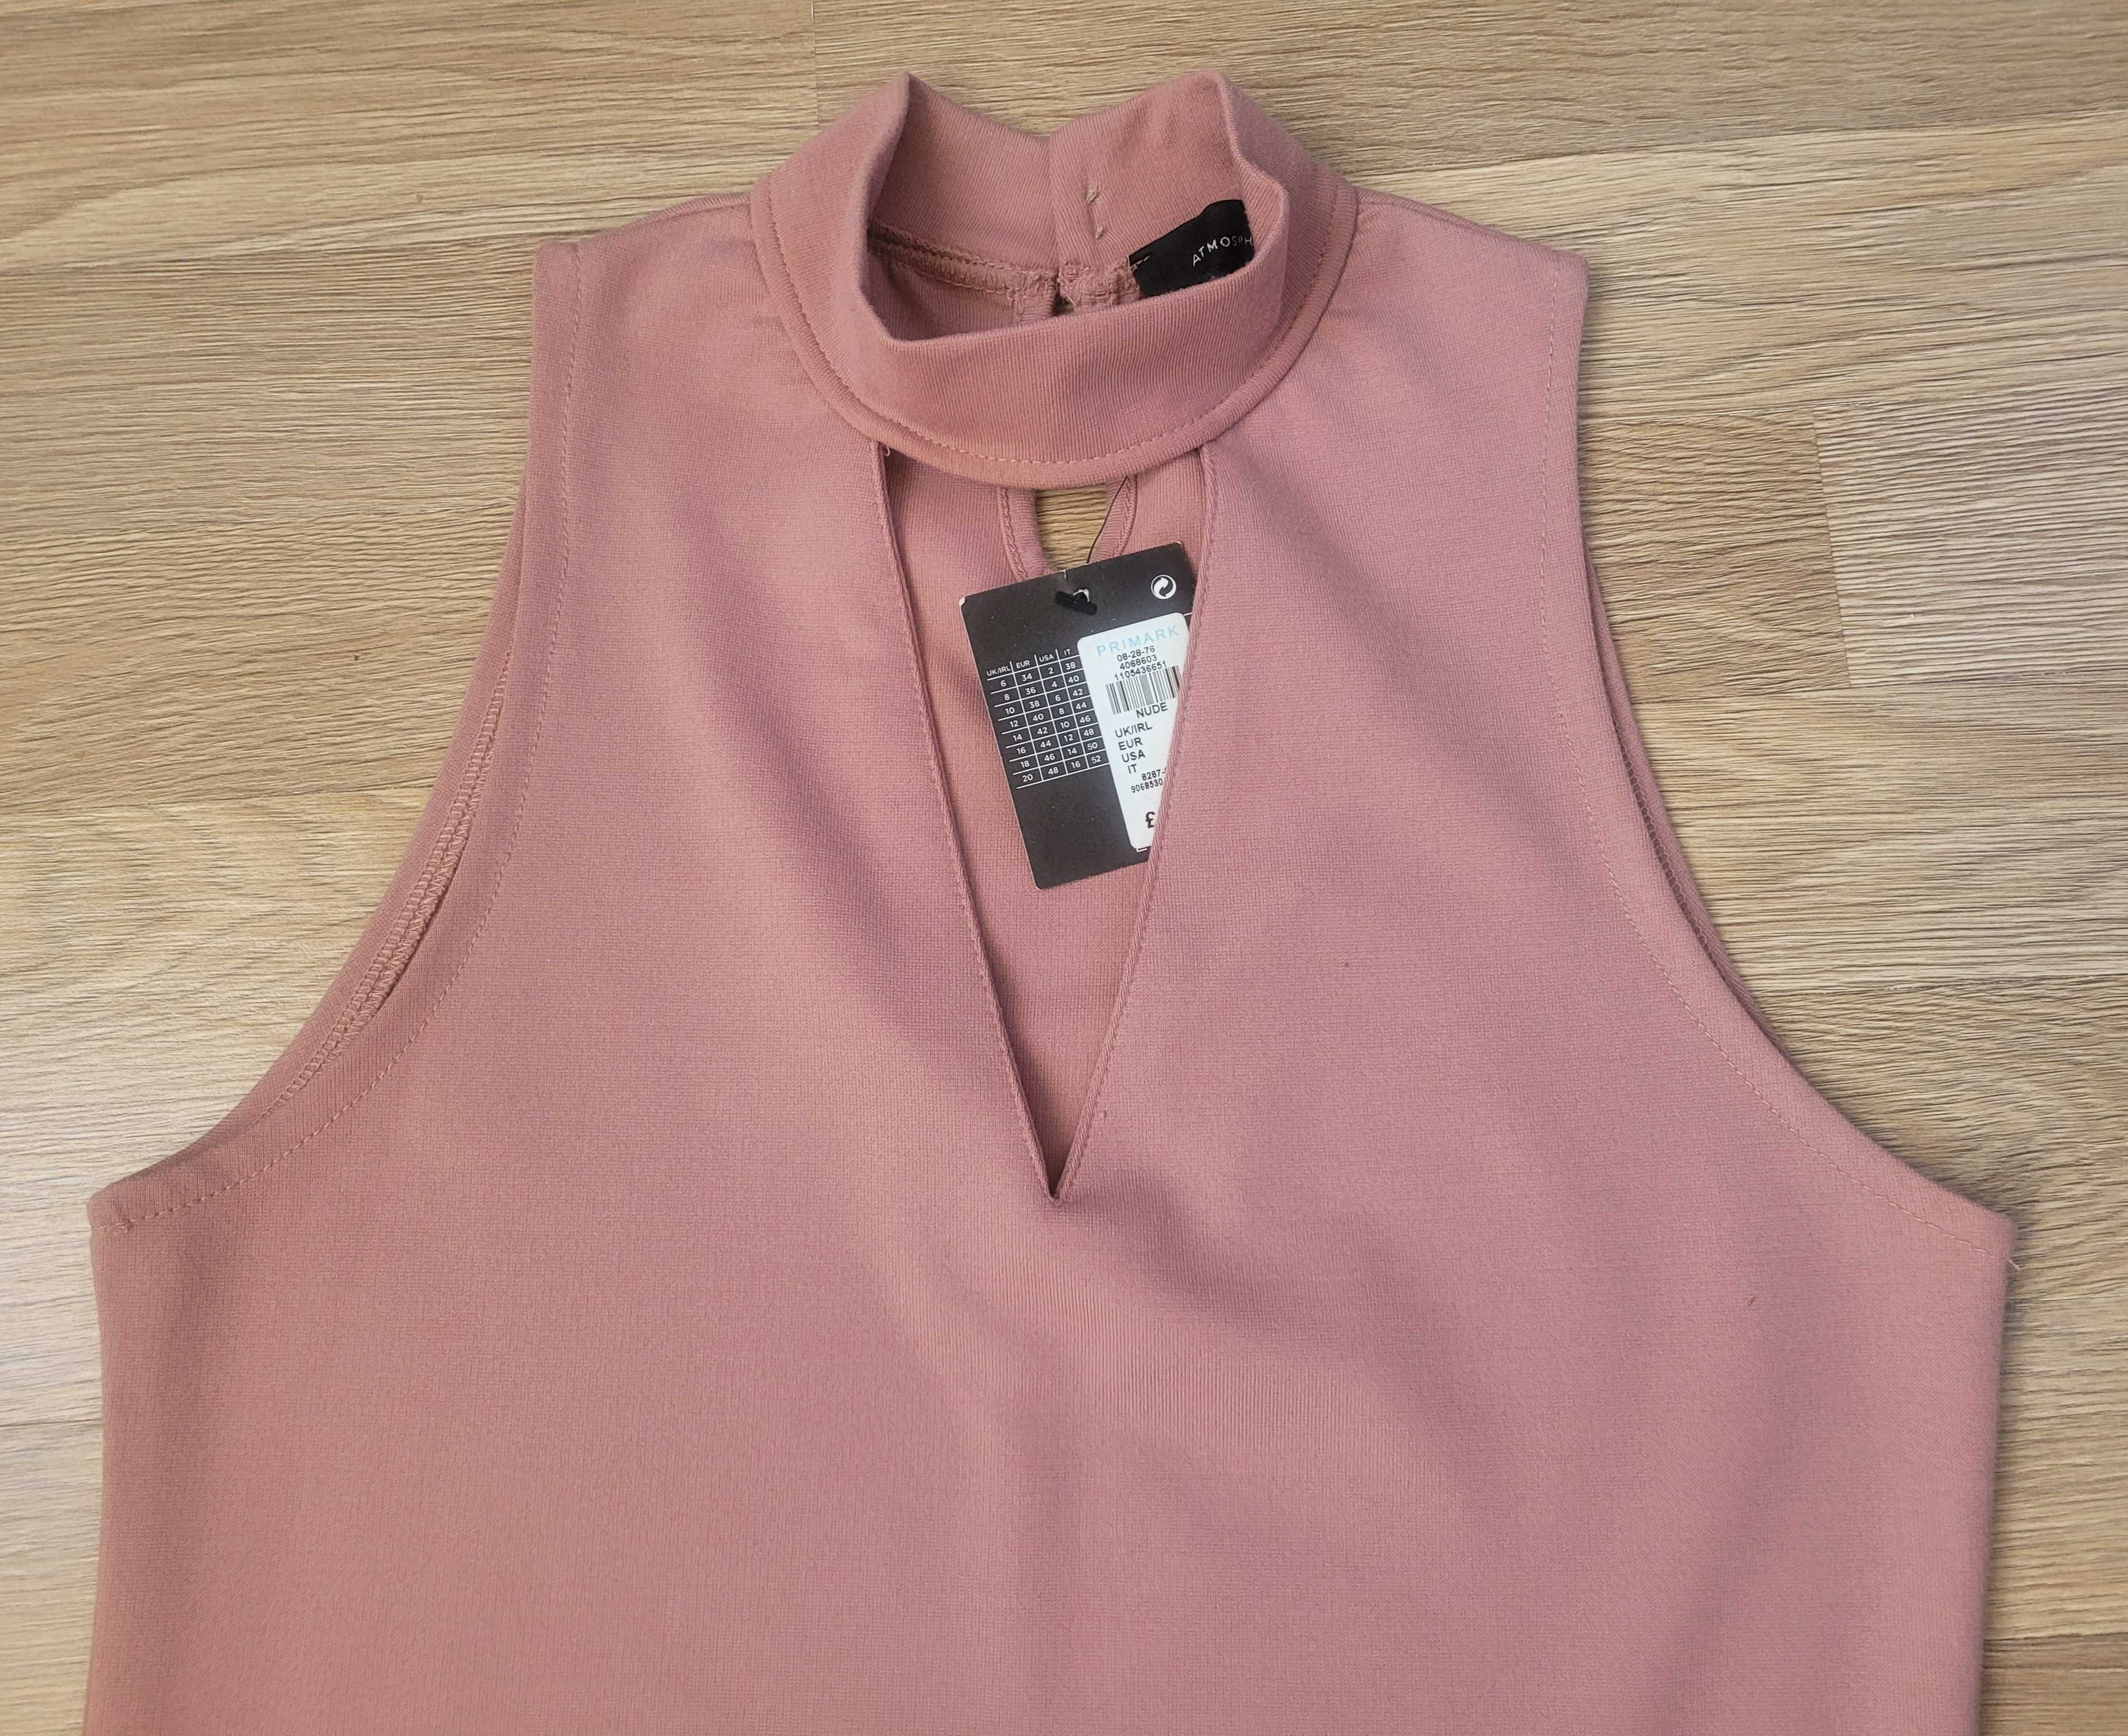 Продам женское платье, Atmosphere, р.S, пудровый розовый цвет, новое